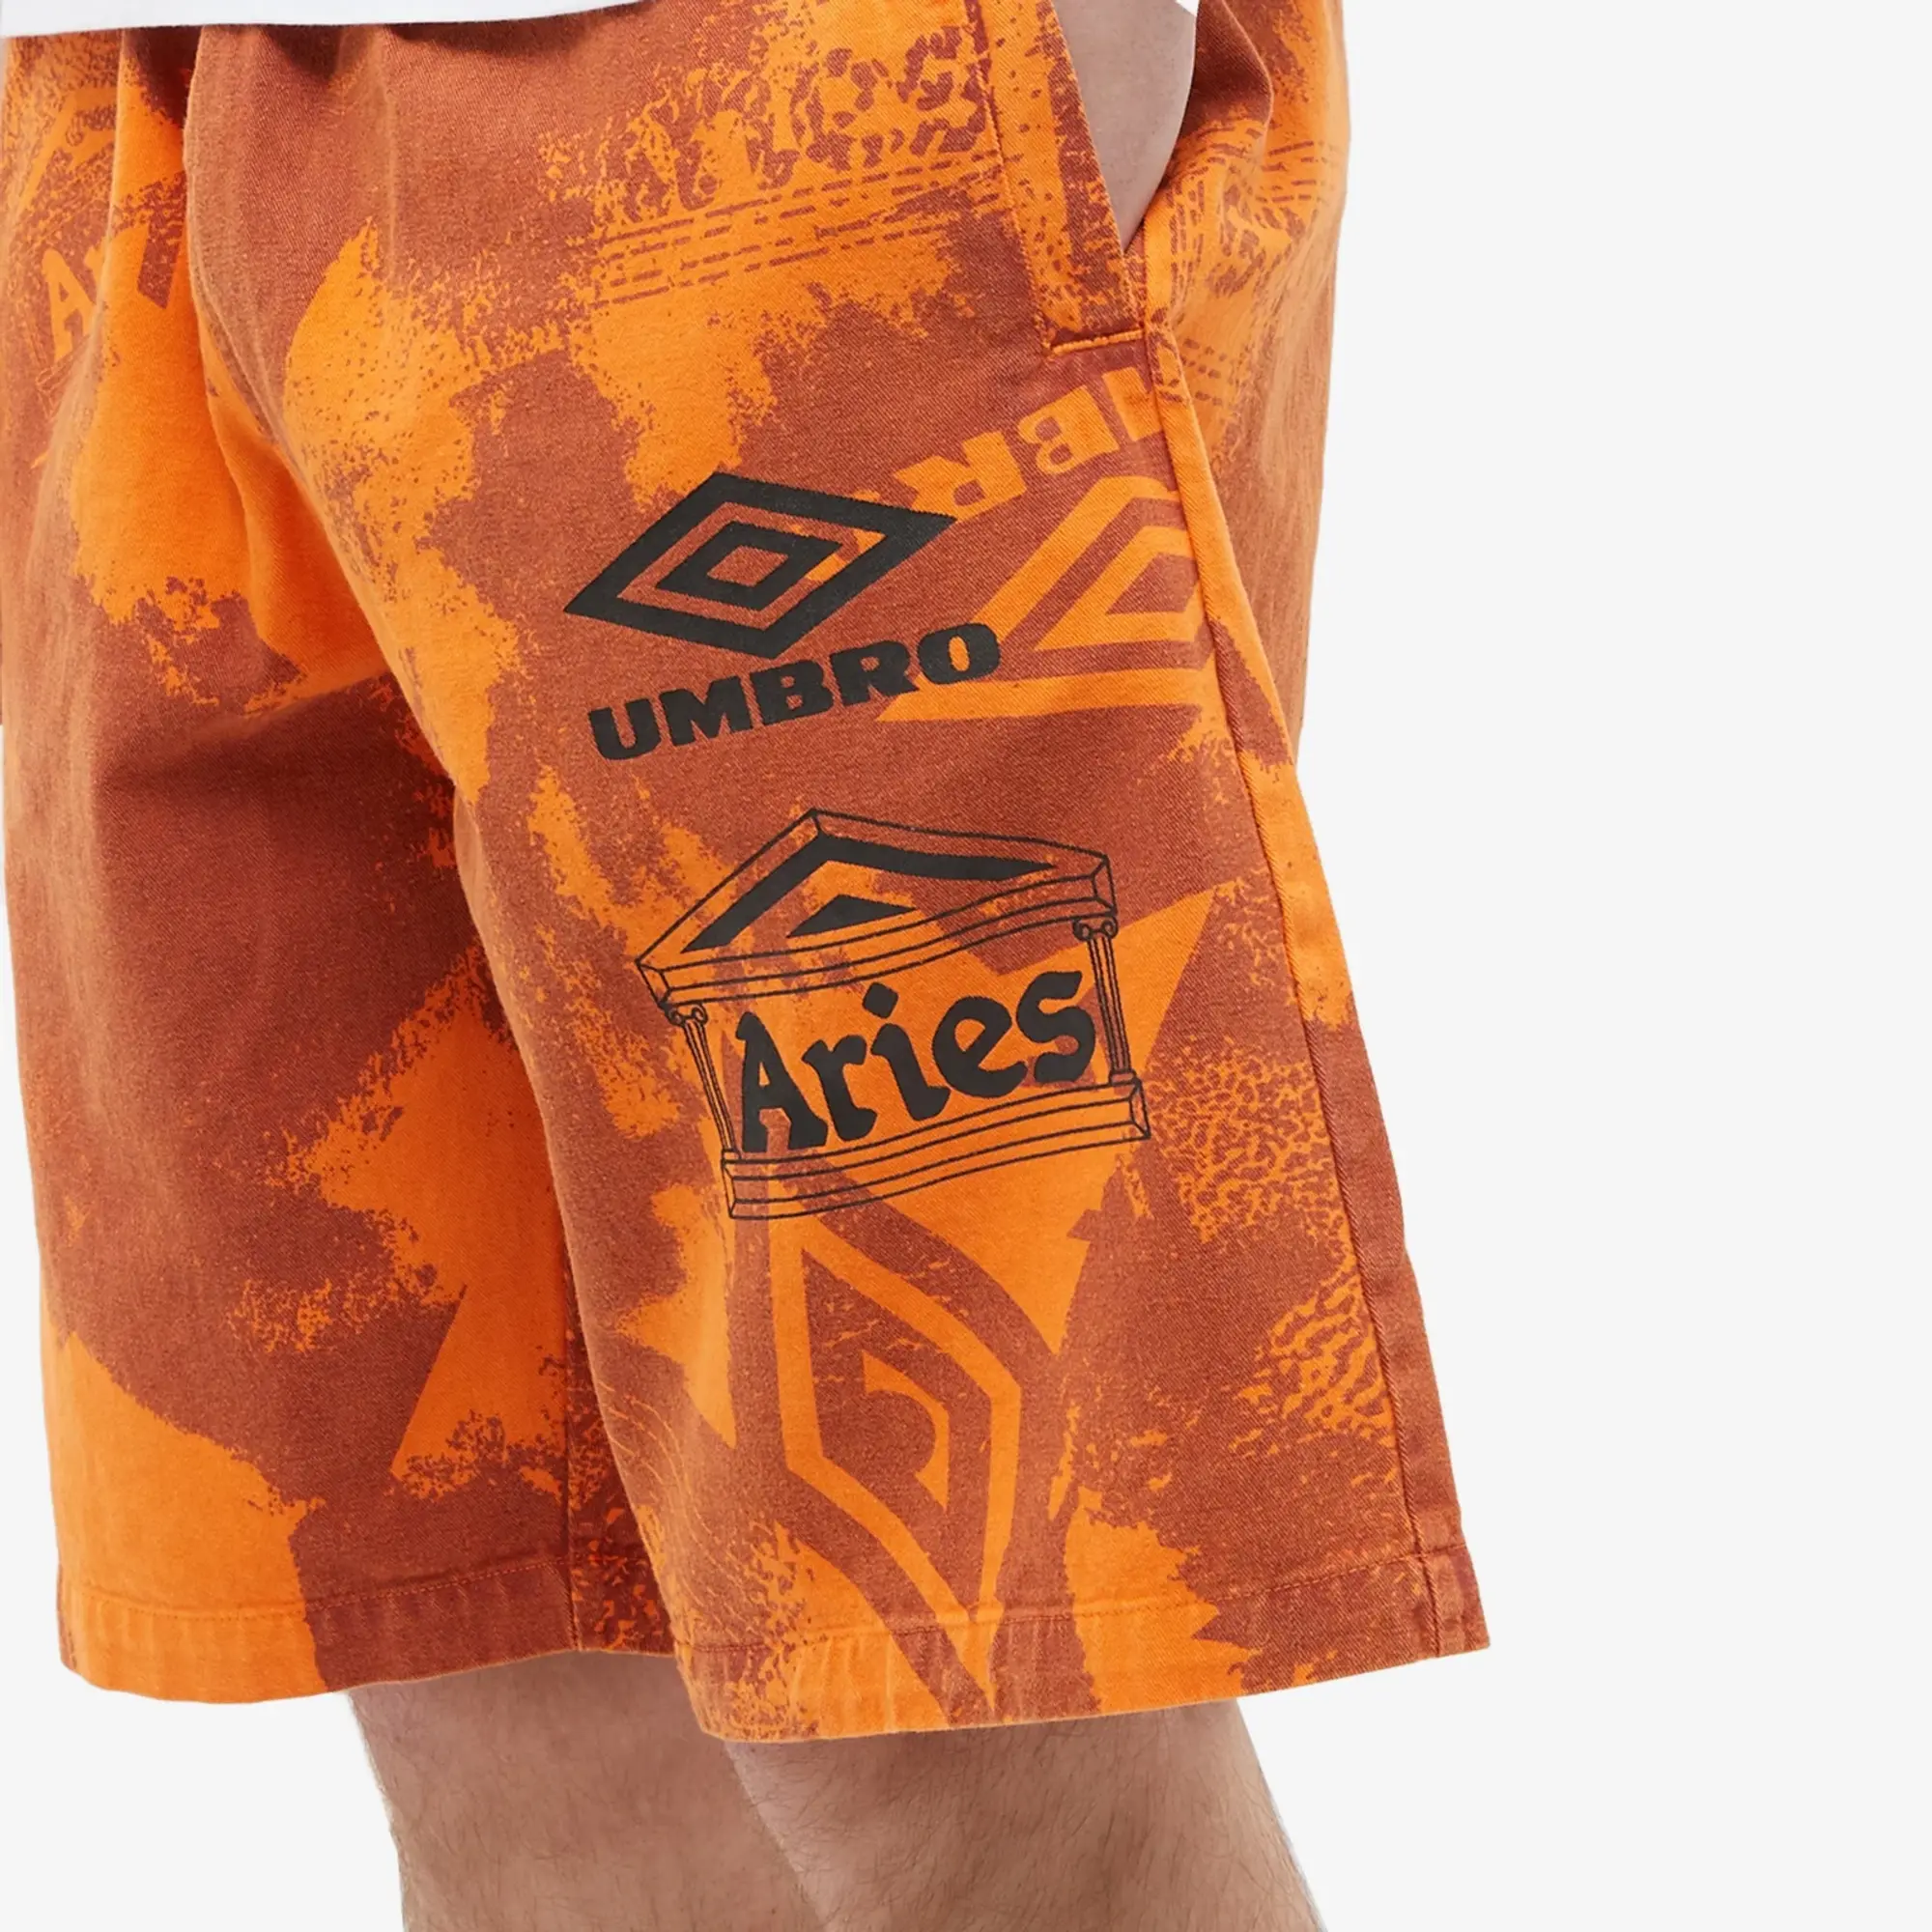 Aries Men's x Umbro Pro 64 Shorts Orange